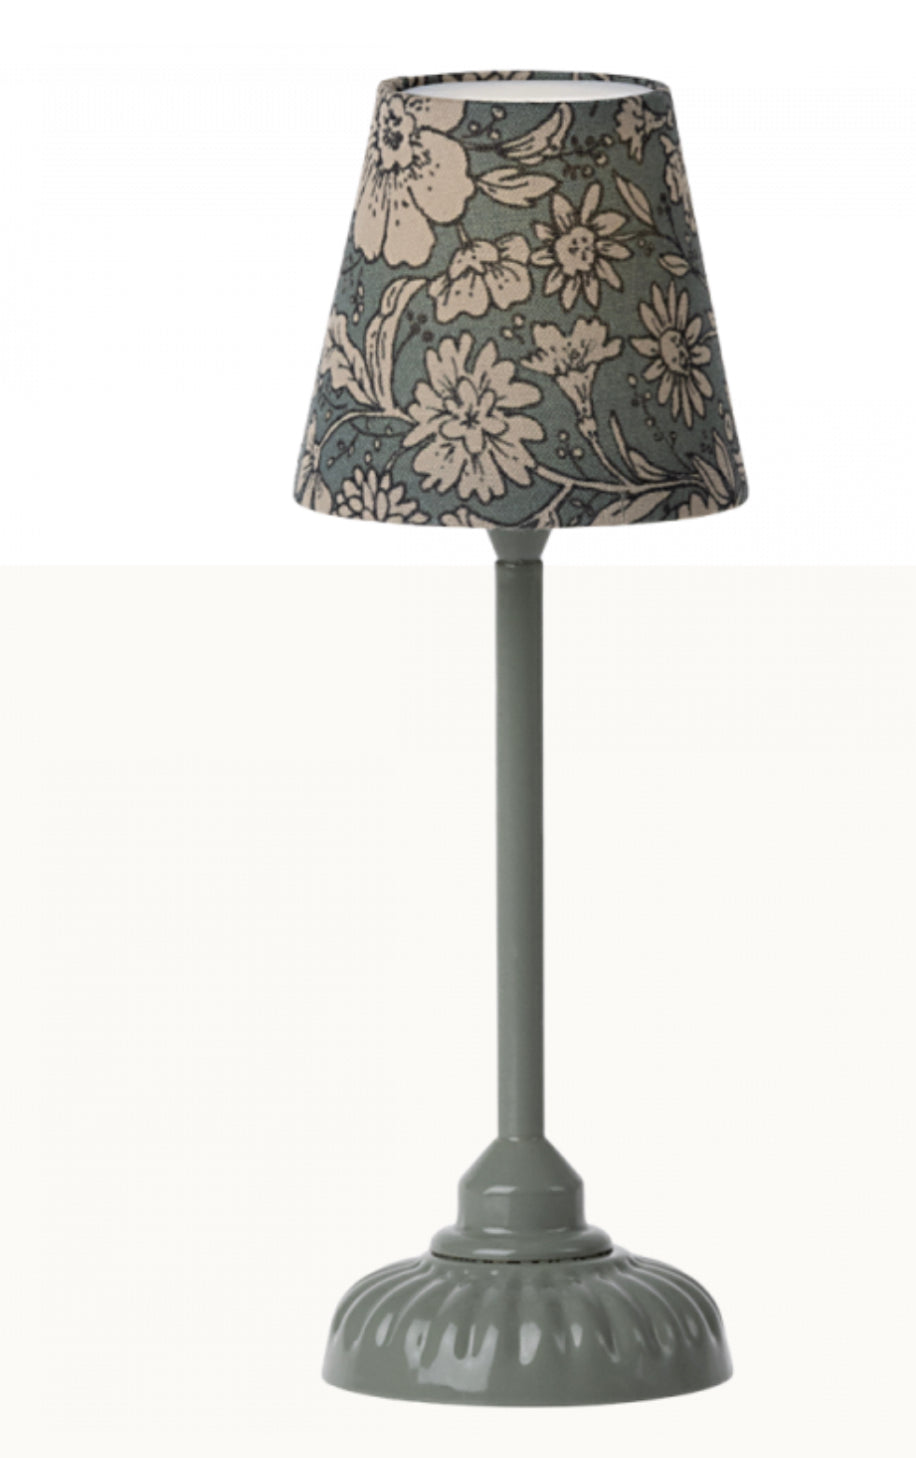 Vintage floor lamp, Small - Dark Mint